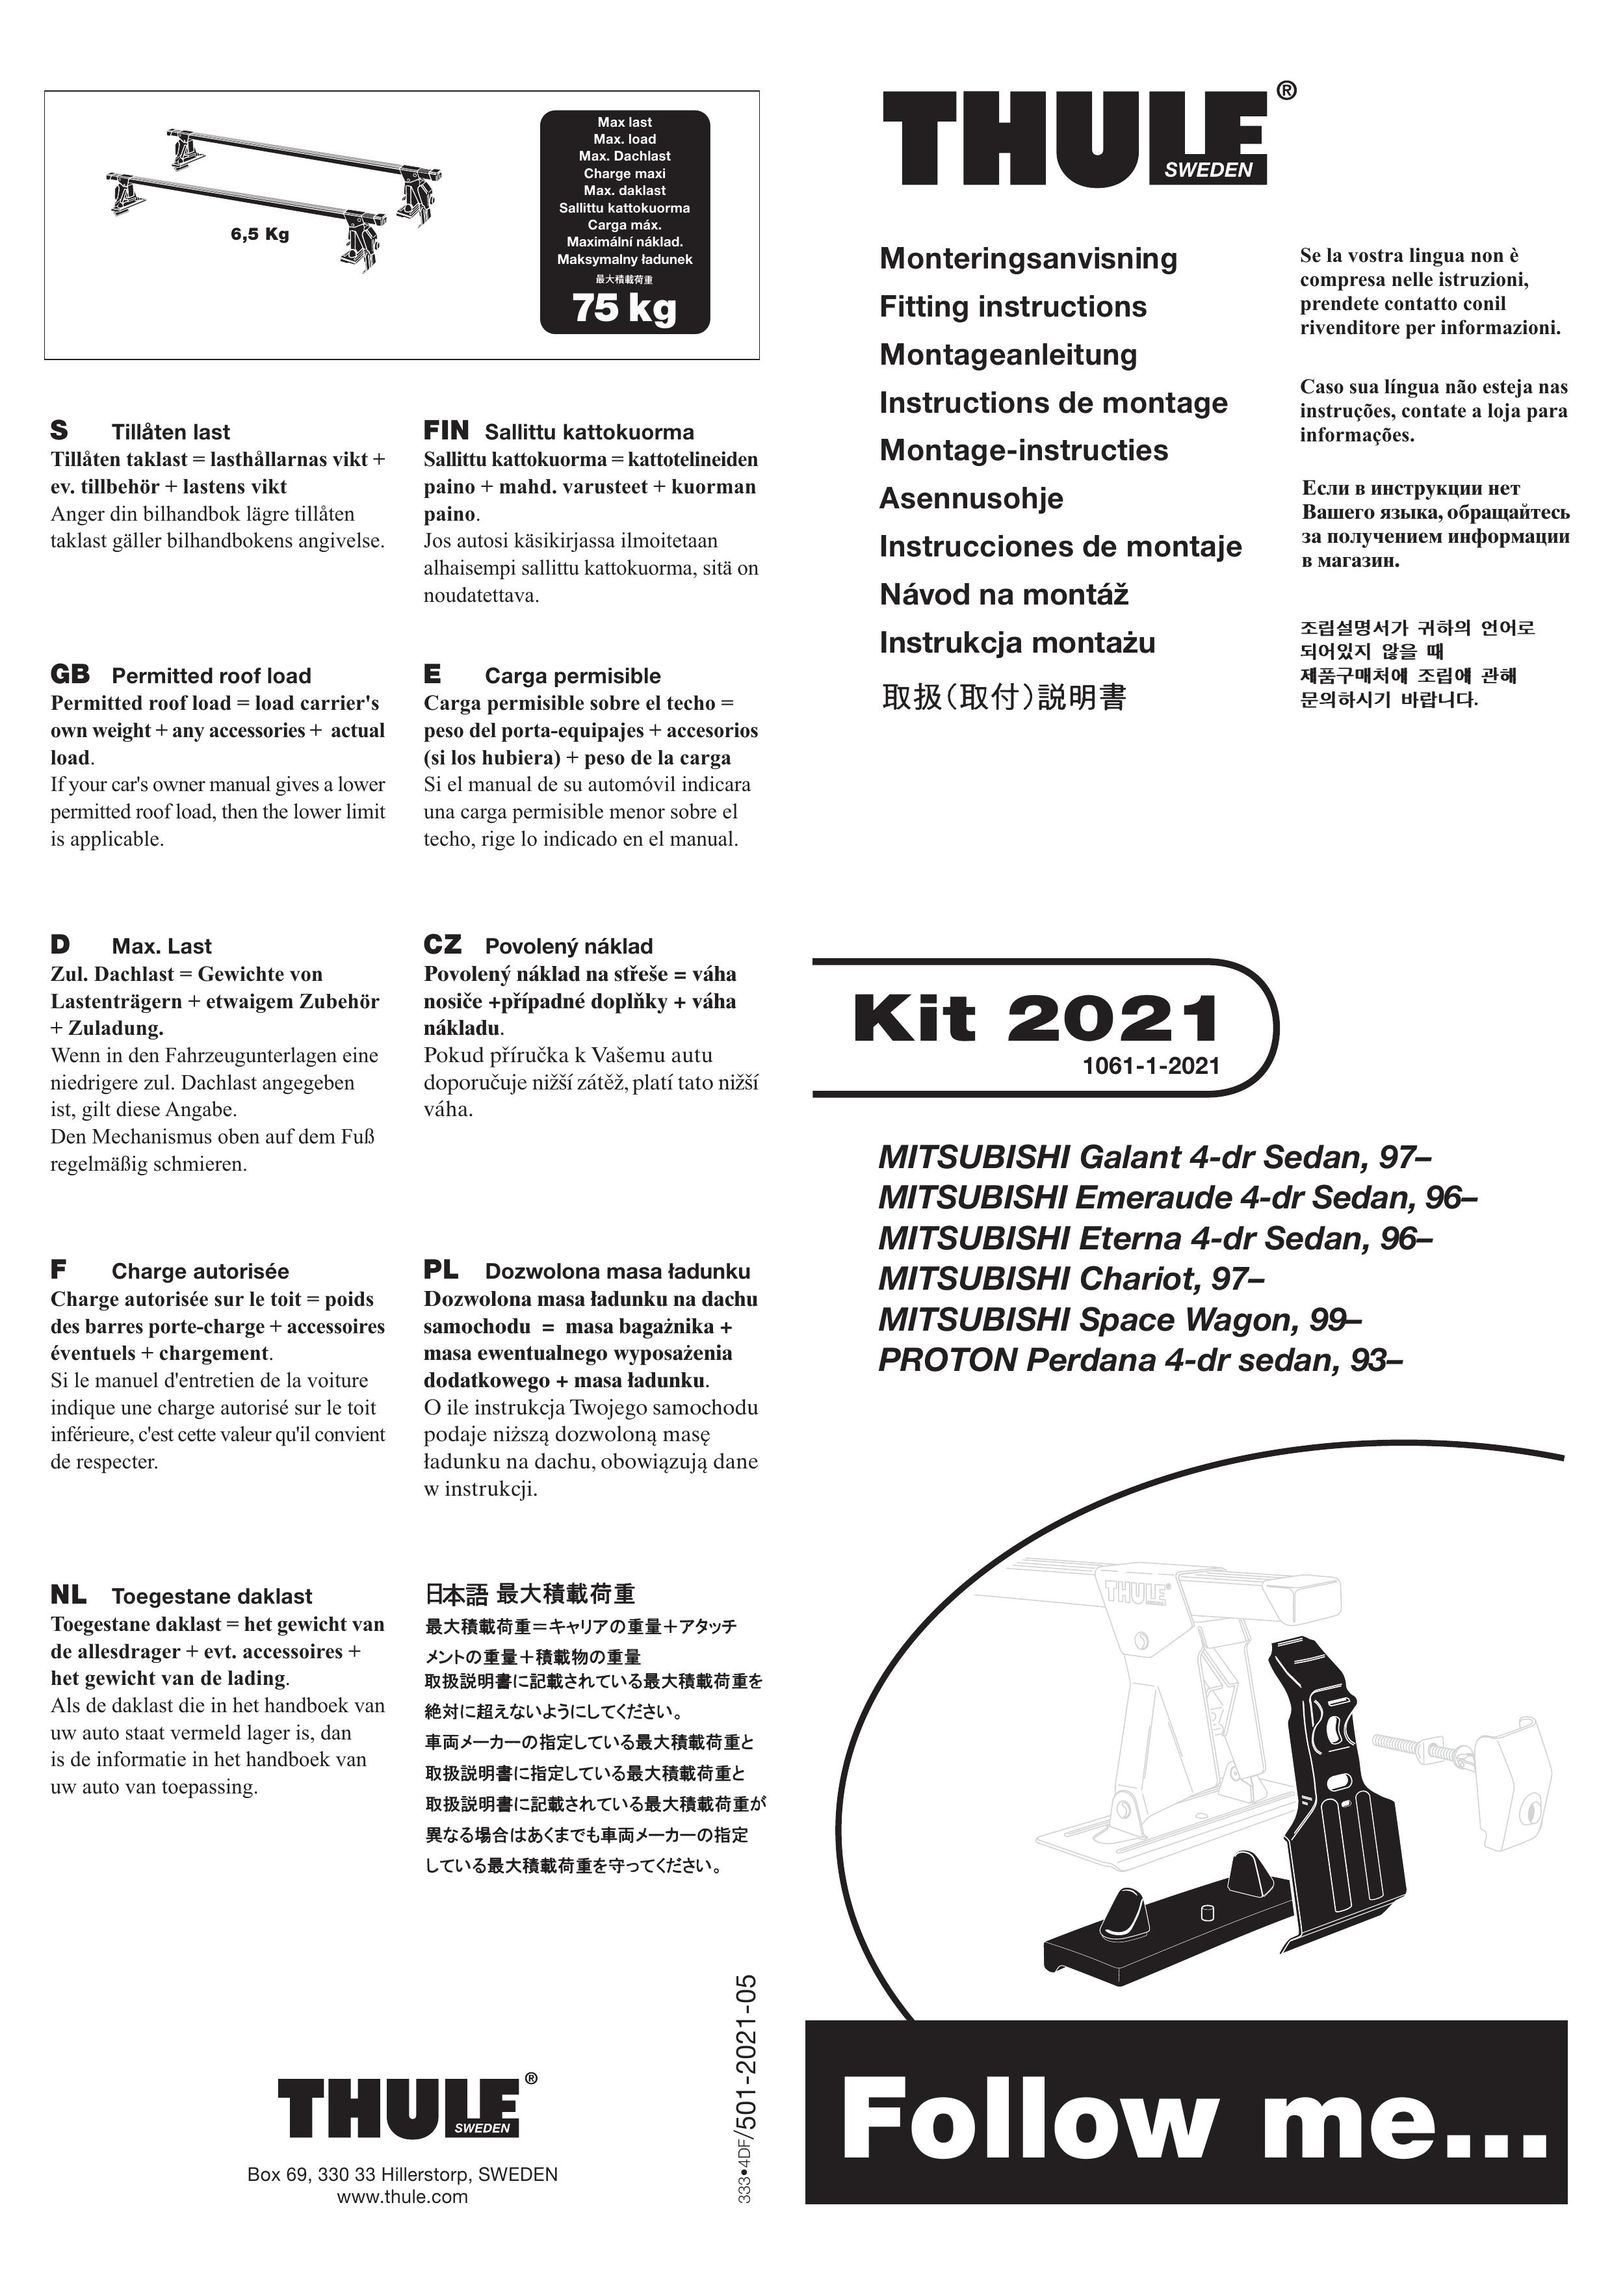 Thule Kit 2021 Bike Rack User Manual